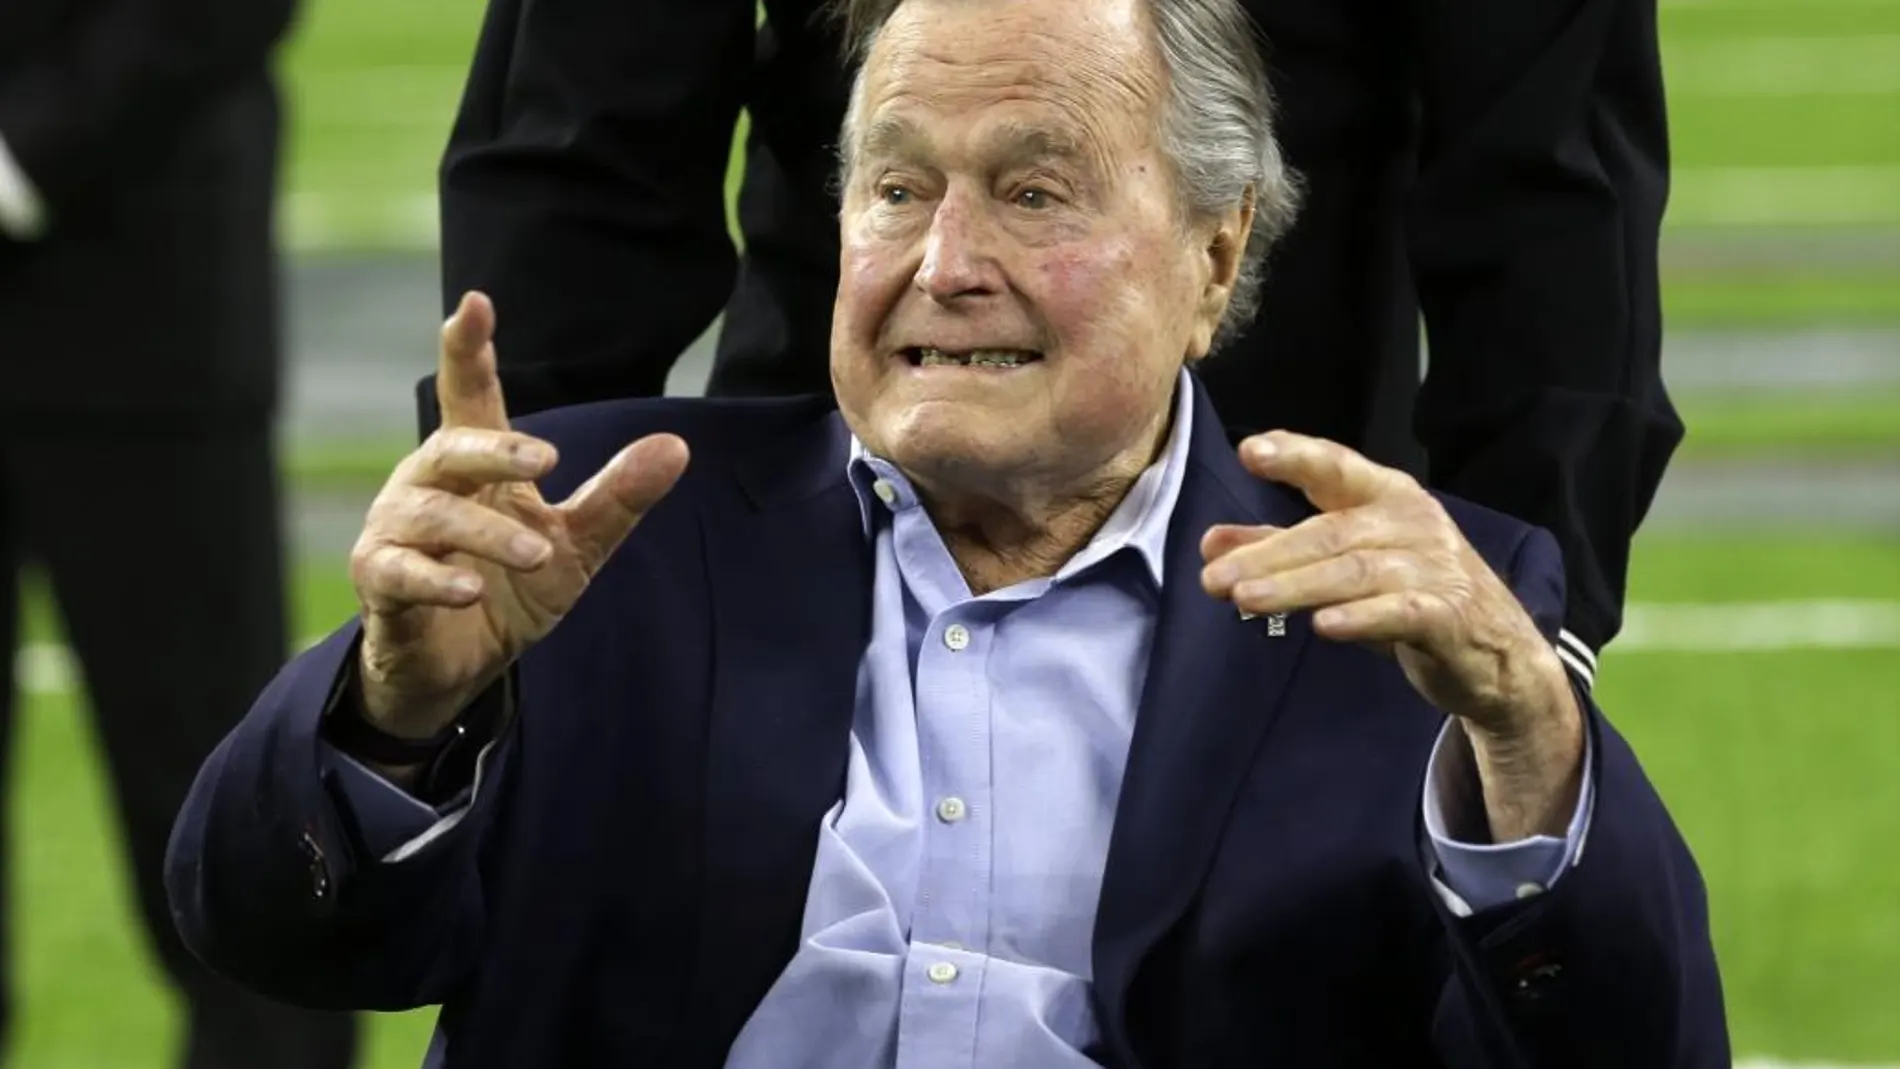 Imagen de George Bush en la Super Bowl celebrada el pasado 5 de febrero